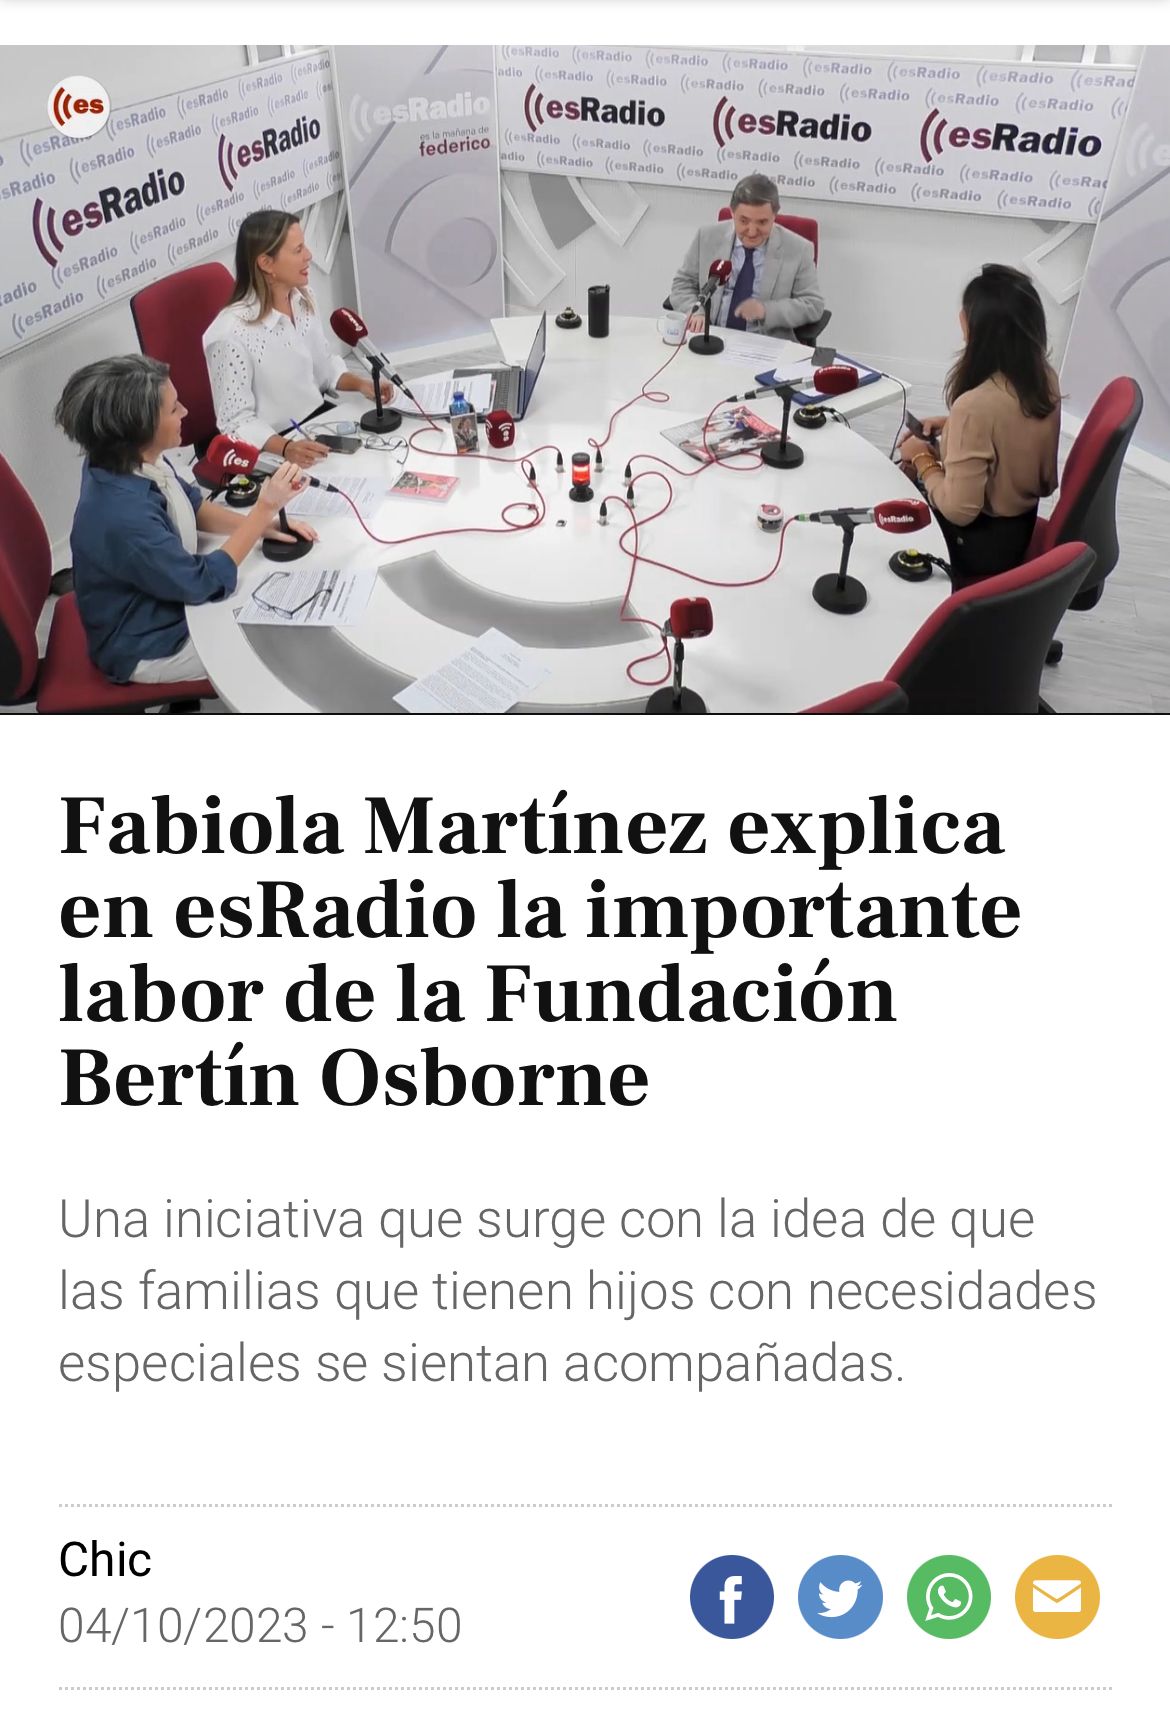 Fabiola Martínez explica en esRadio la importante labor de la Fundación Bertín Osborne